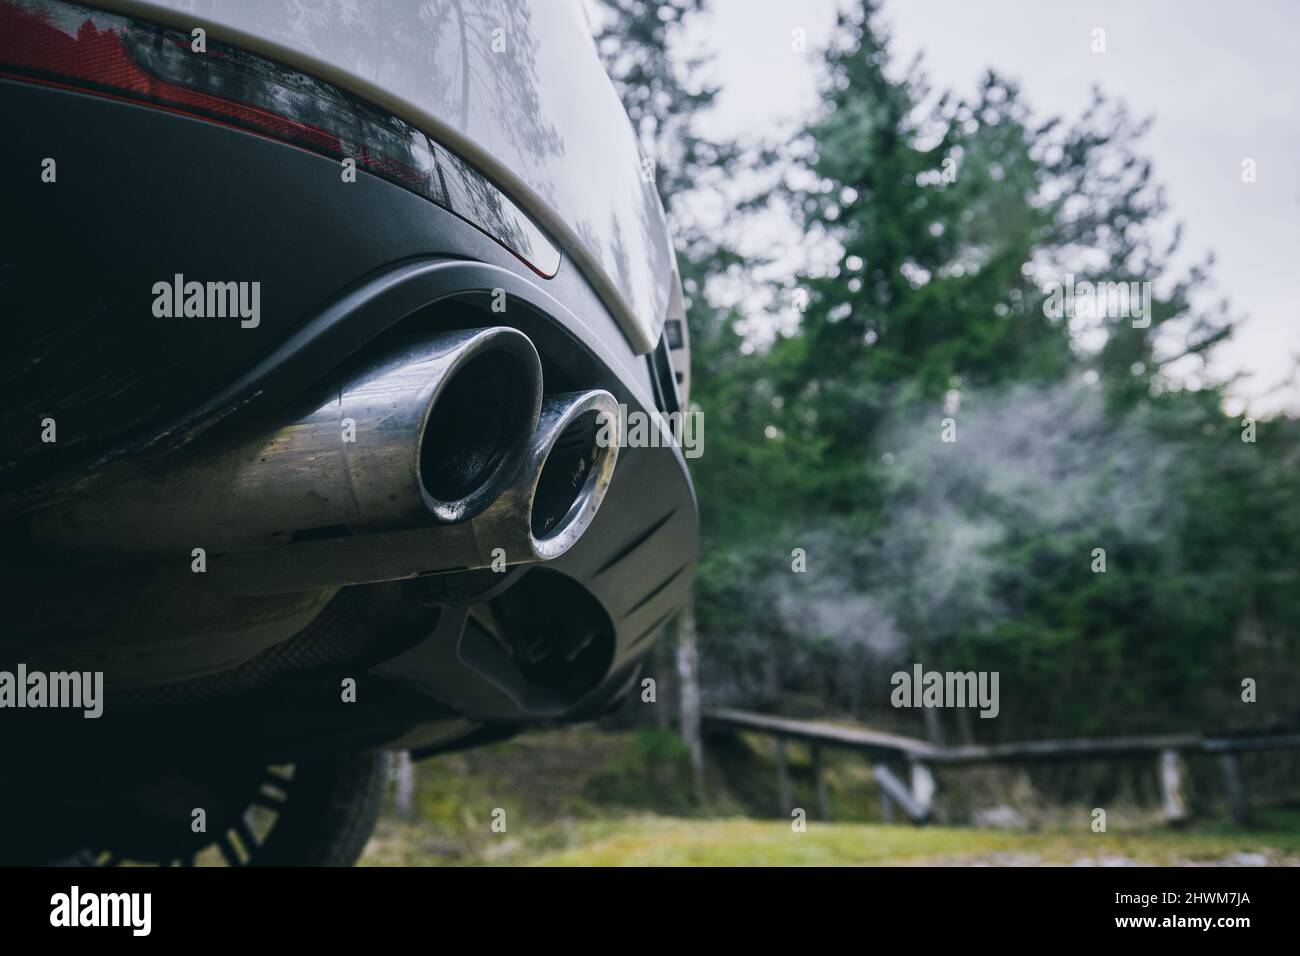 Auto auspuff suv abgas umwelt -Fotos und -Bildmaterial in hoher Auflösung –  Alamy